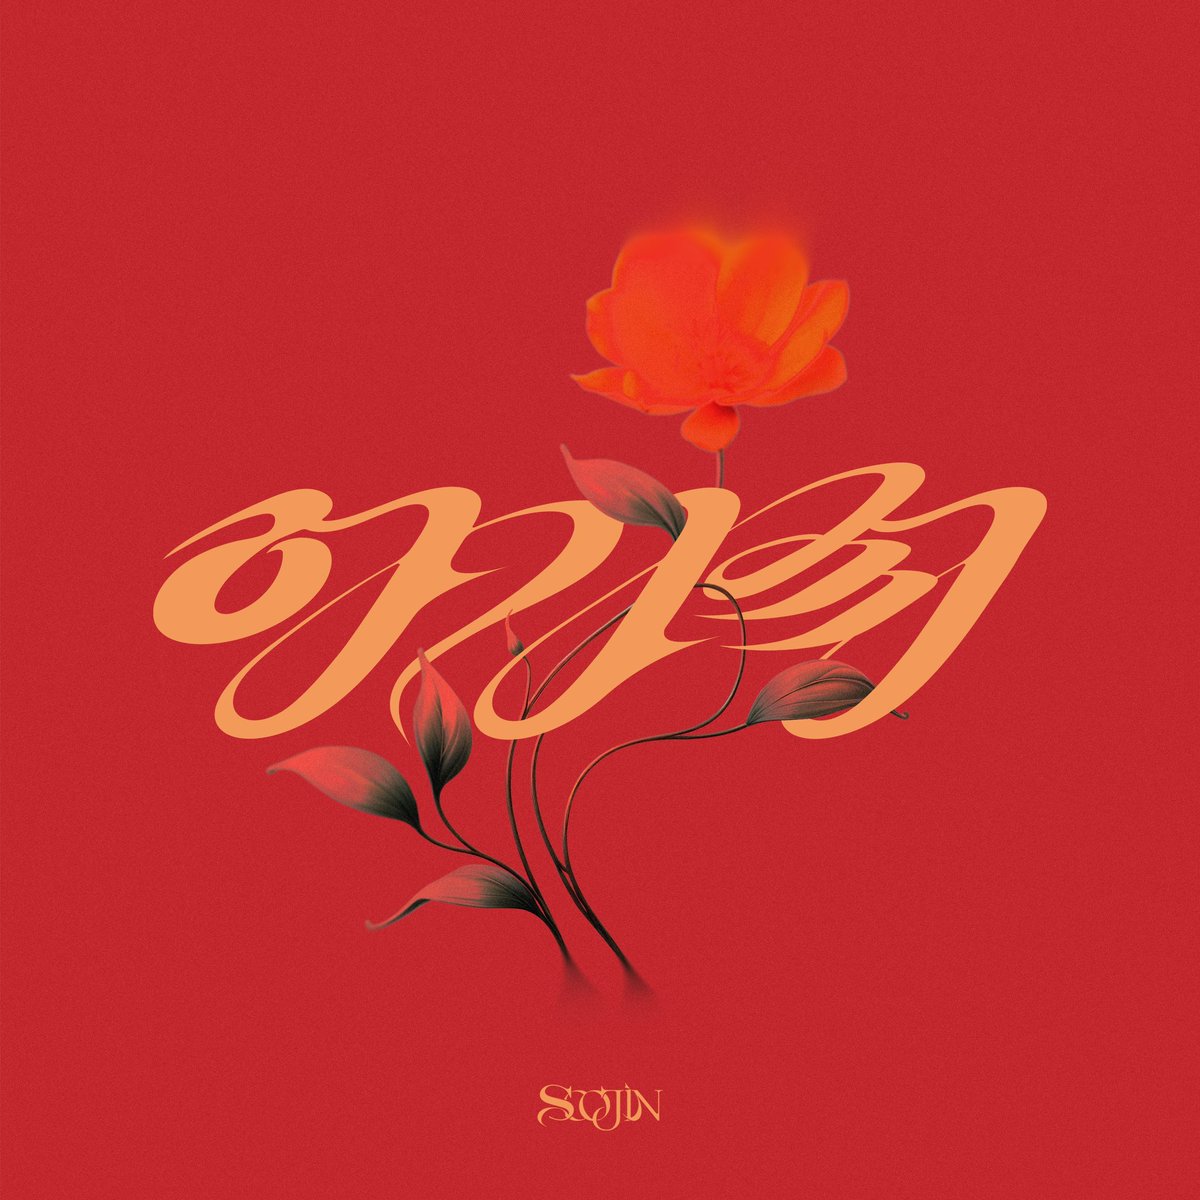 수진 (SOOJIN) 1st EP [아가씨] 🌹OUT NOW🌹 🎧 Melon - kko.to/tYS5KK0q3R 🎧 Genie - genie.co.kr/VCIQQ2 🎧 Vibe - naver.me/5Vl8r1G9 🎧 Spotify - bit.ly/3QxbN8t #수진 #SOOJIN #아가씨